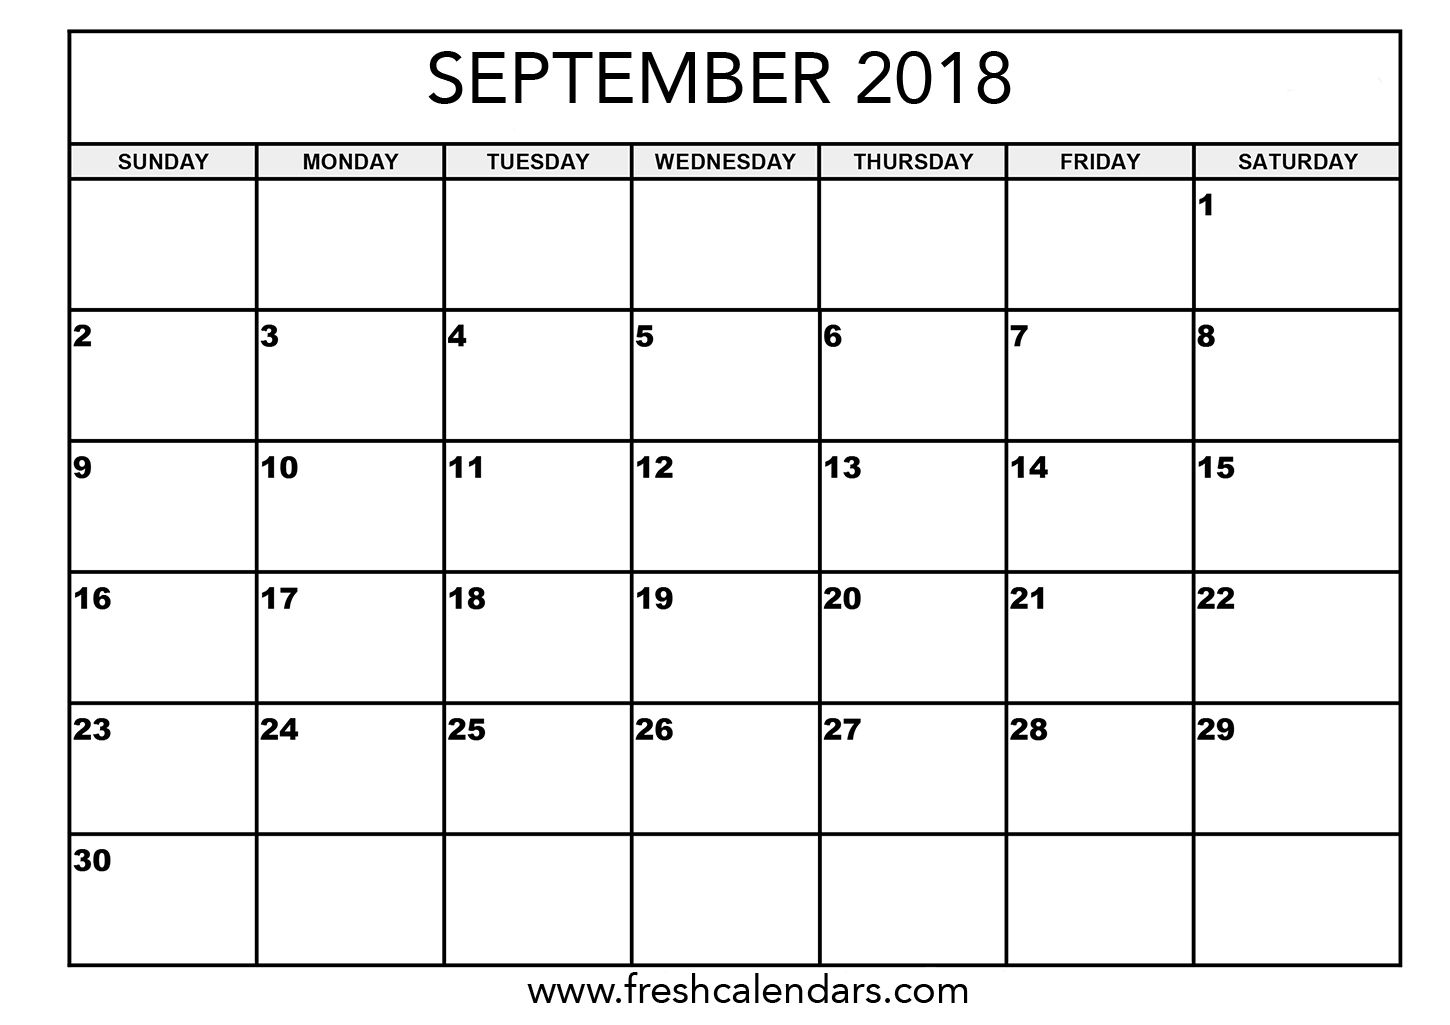 September 2018 Calendar Printable - Fresh Calendars with Calendar For The Month Of September